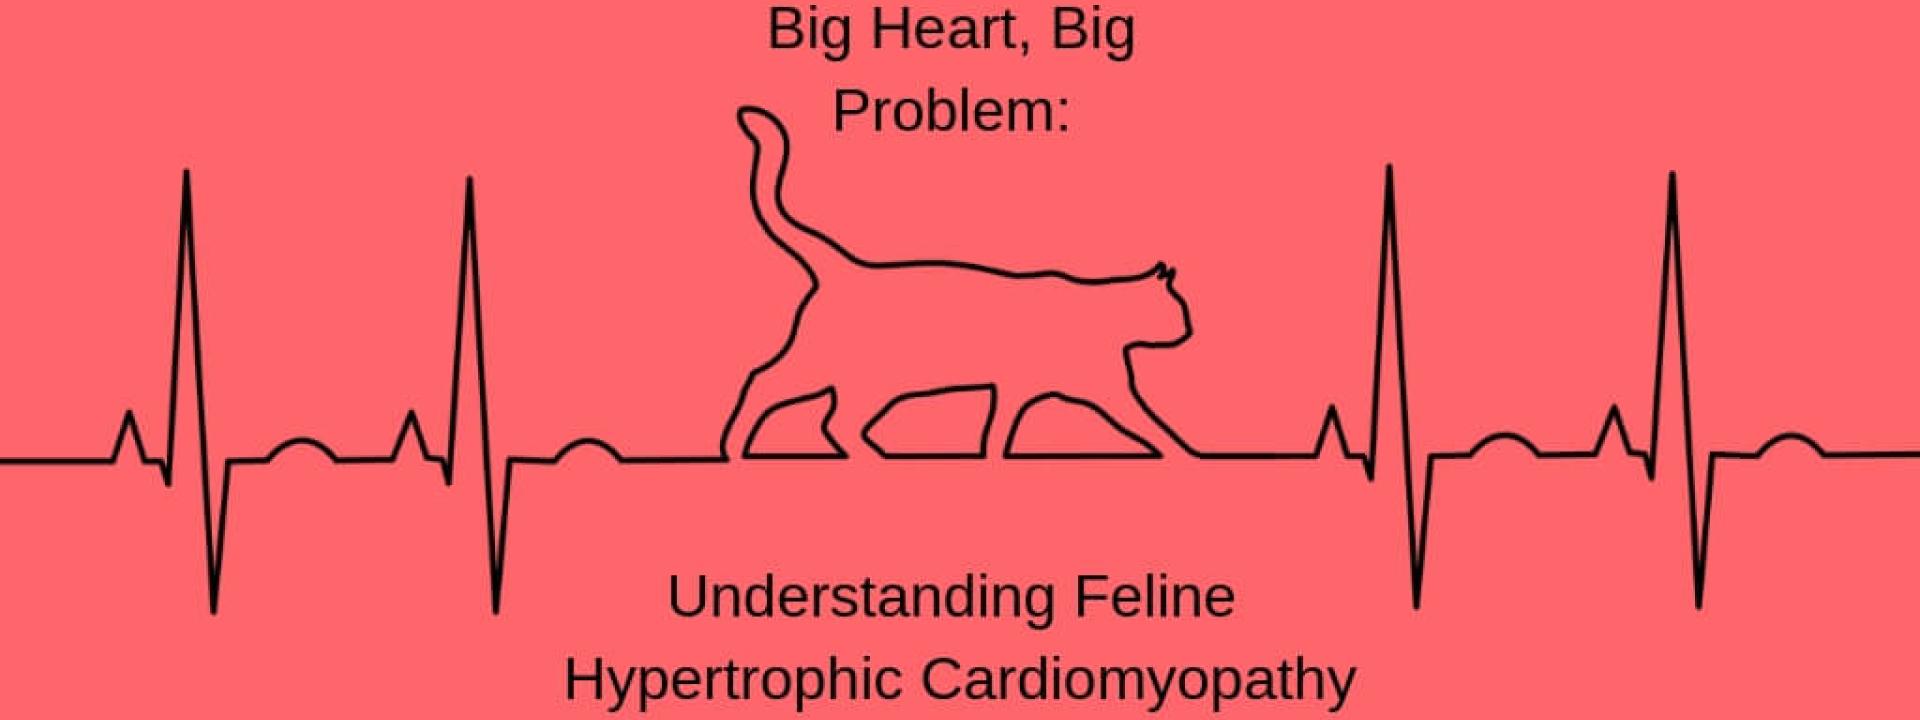 feline-HCM-blog-header.jpg